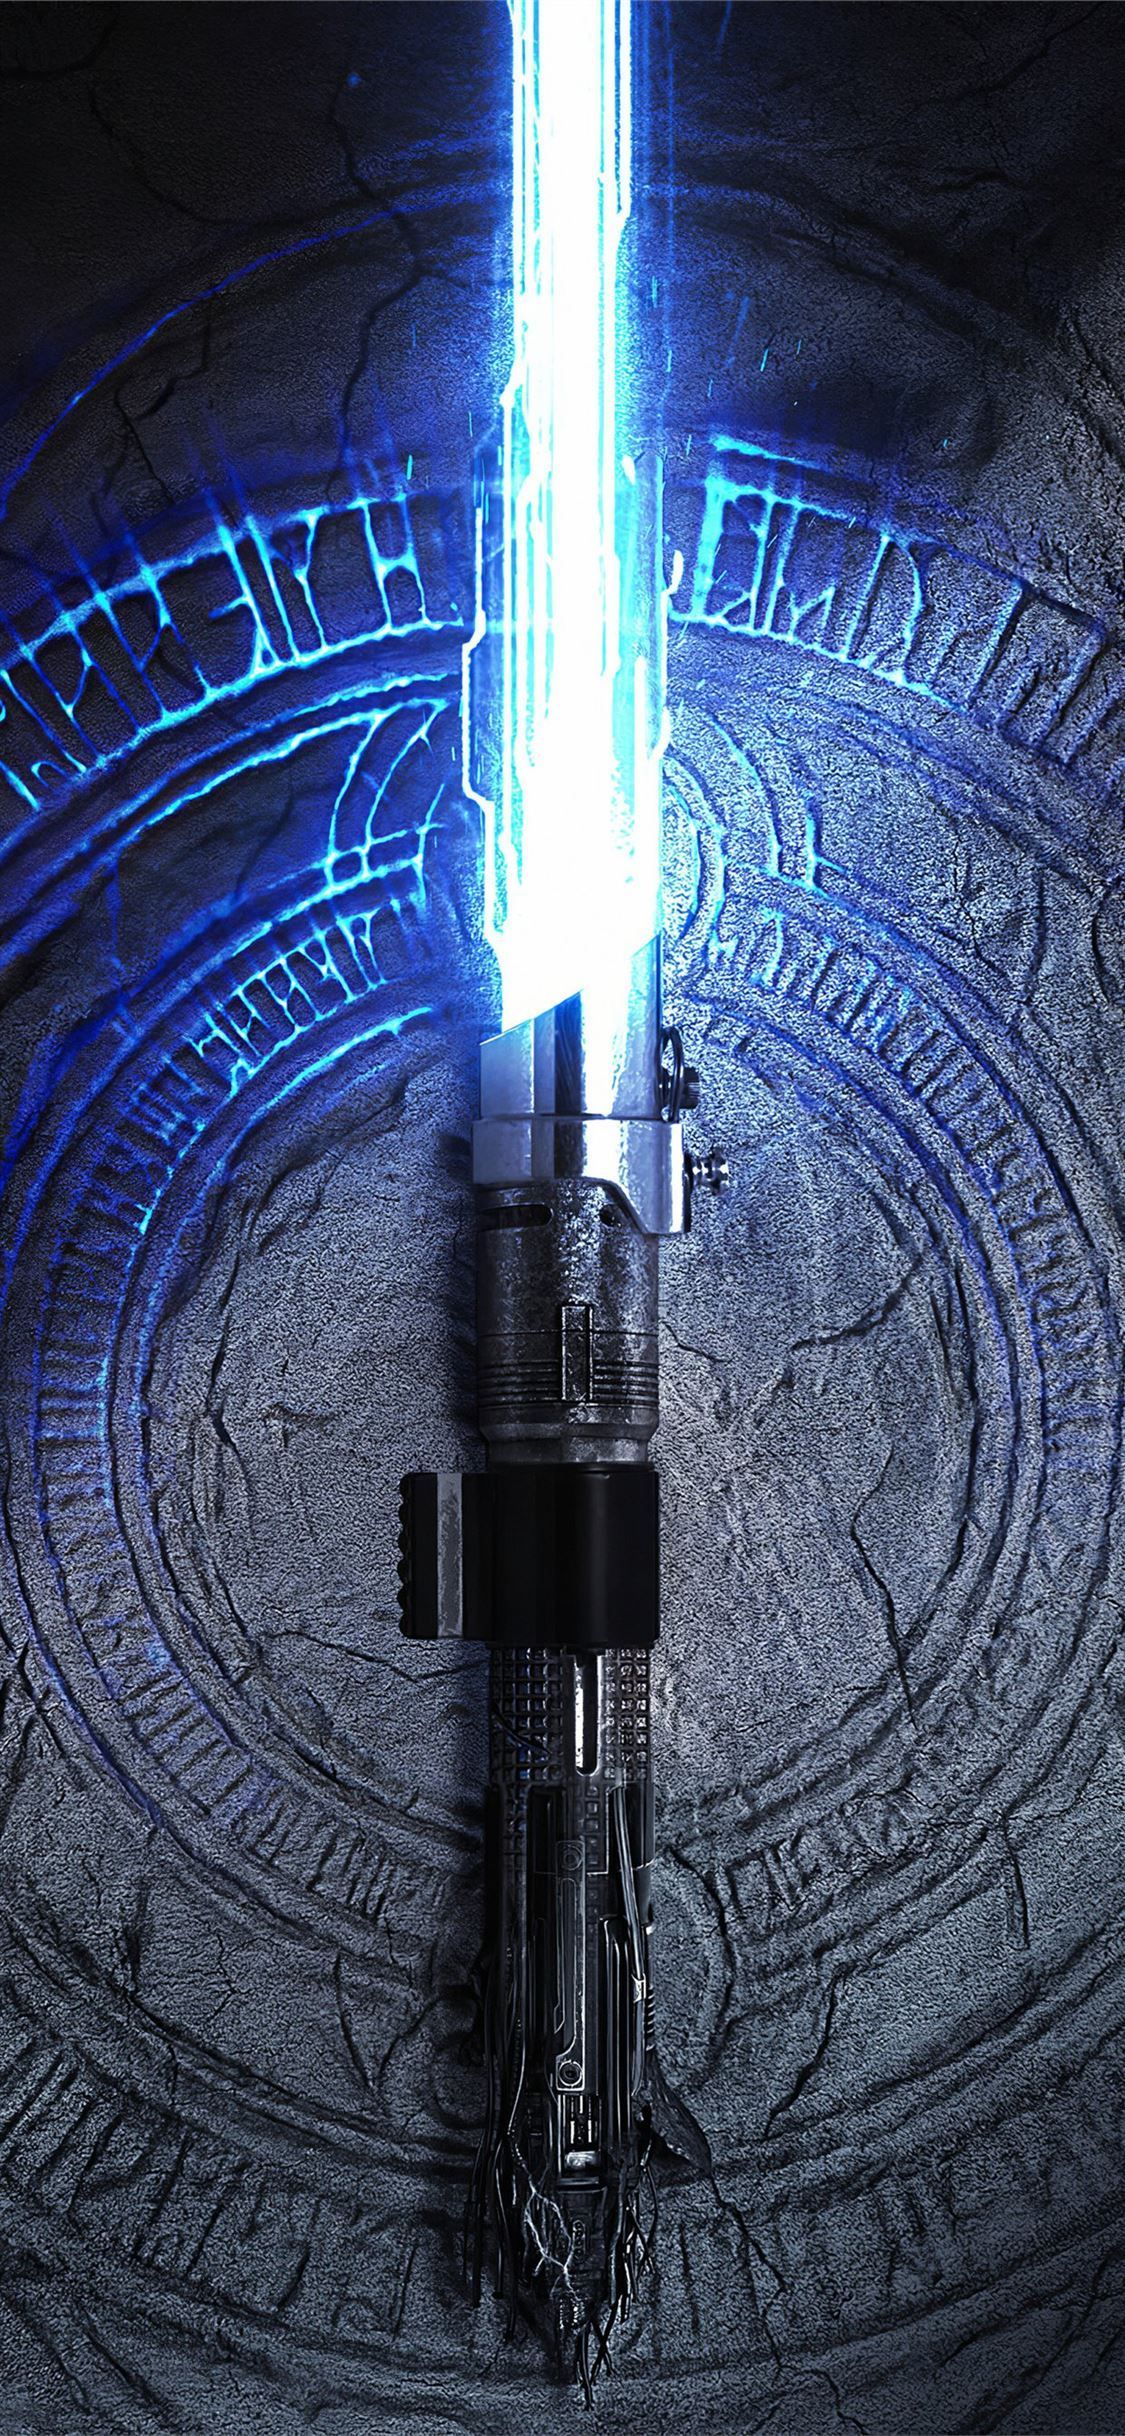 X Star Wars Lightsaber Artist Artwork Digital Art Hd K Hot Sex Picture